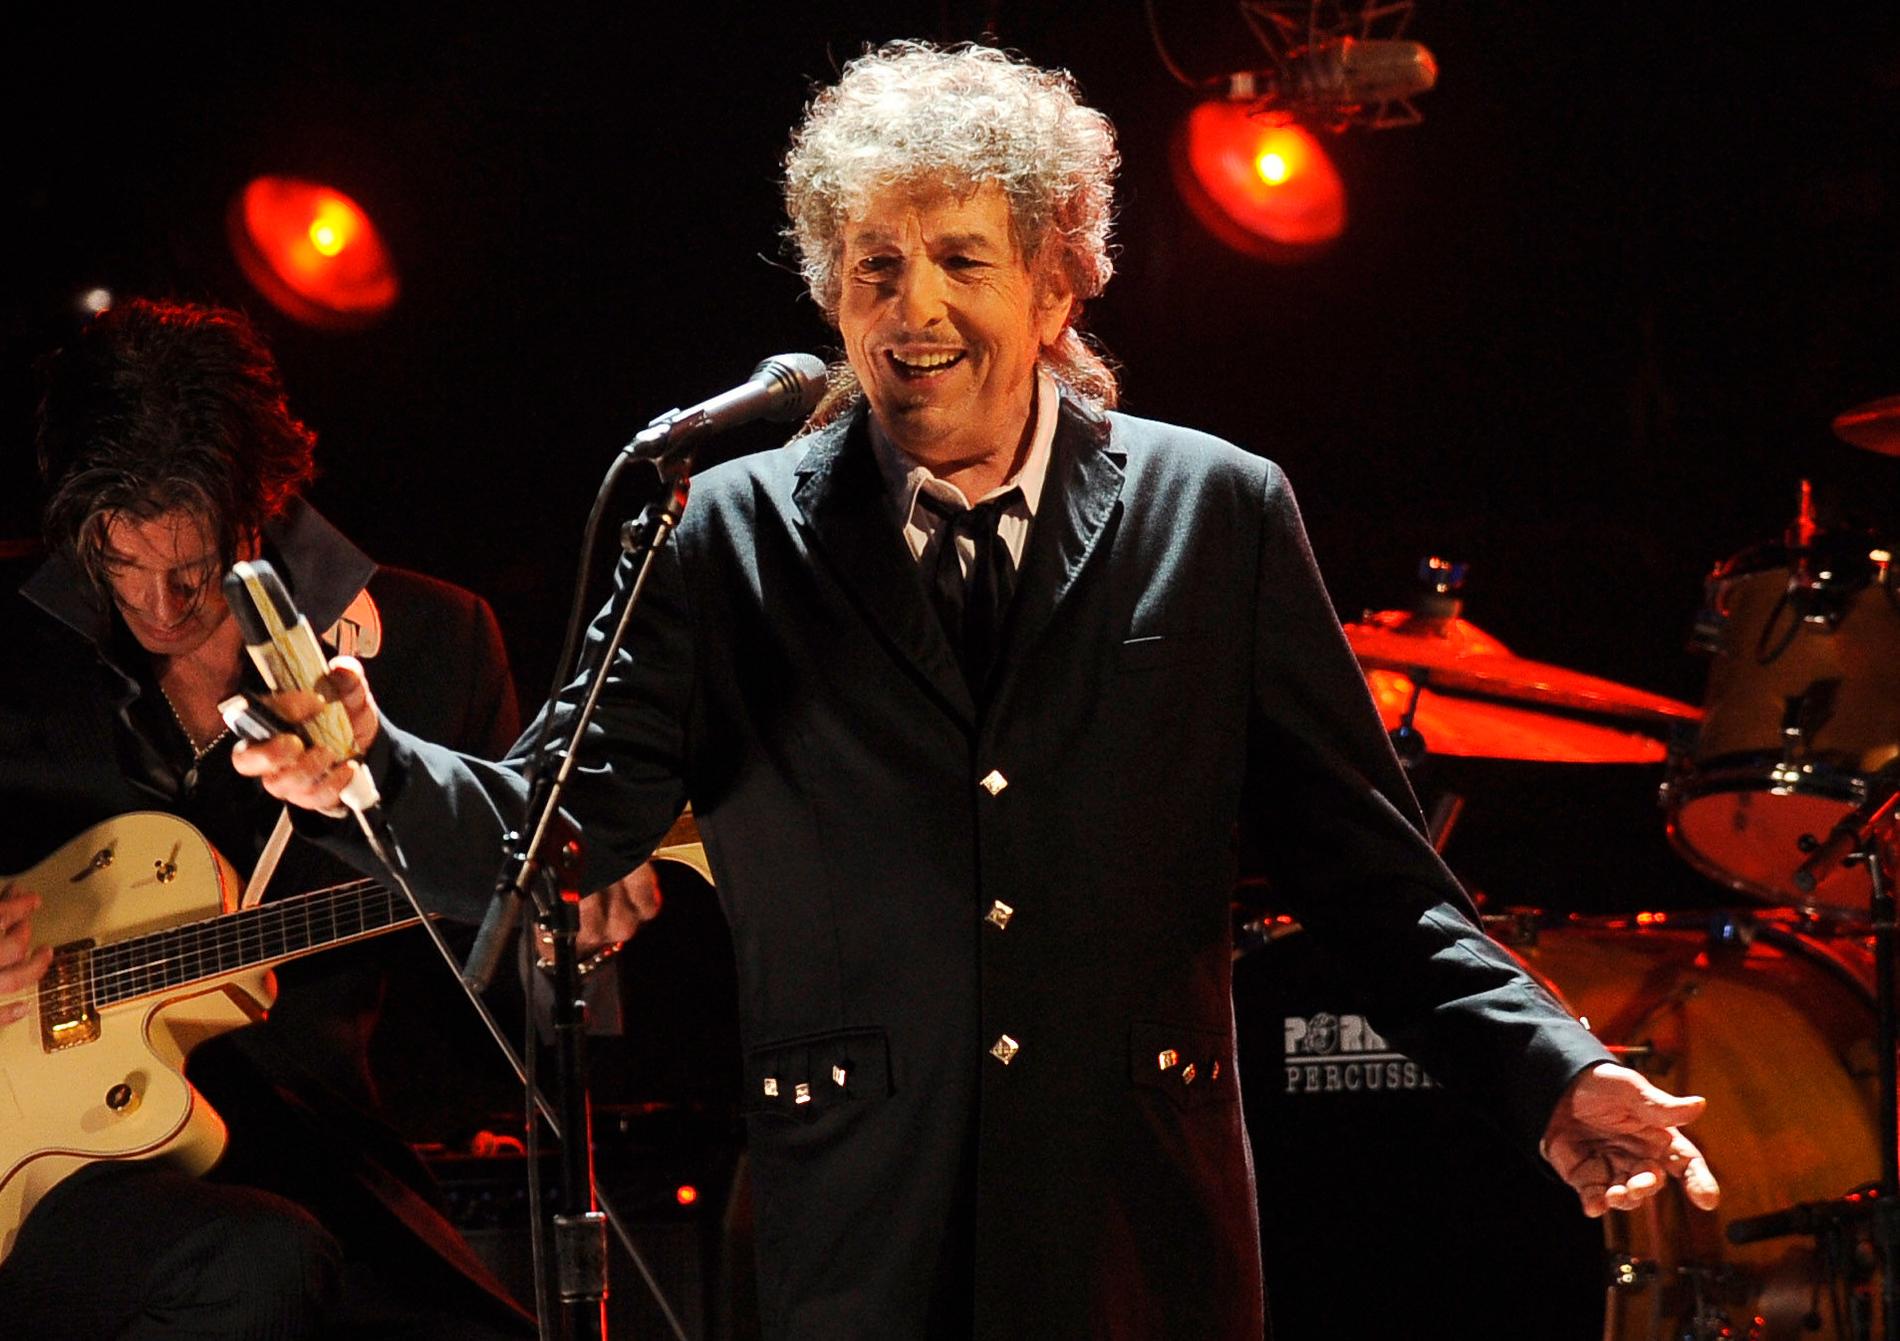 Artisten och Nobelpristagaren Bob Dylan ber om ursäkt för att ha använt en signeringsmaskin för att signera sin nya bok "The philosophy of modern song".